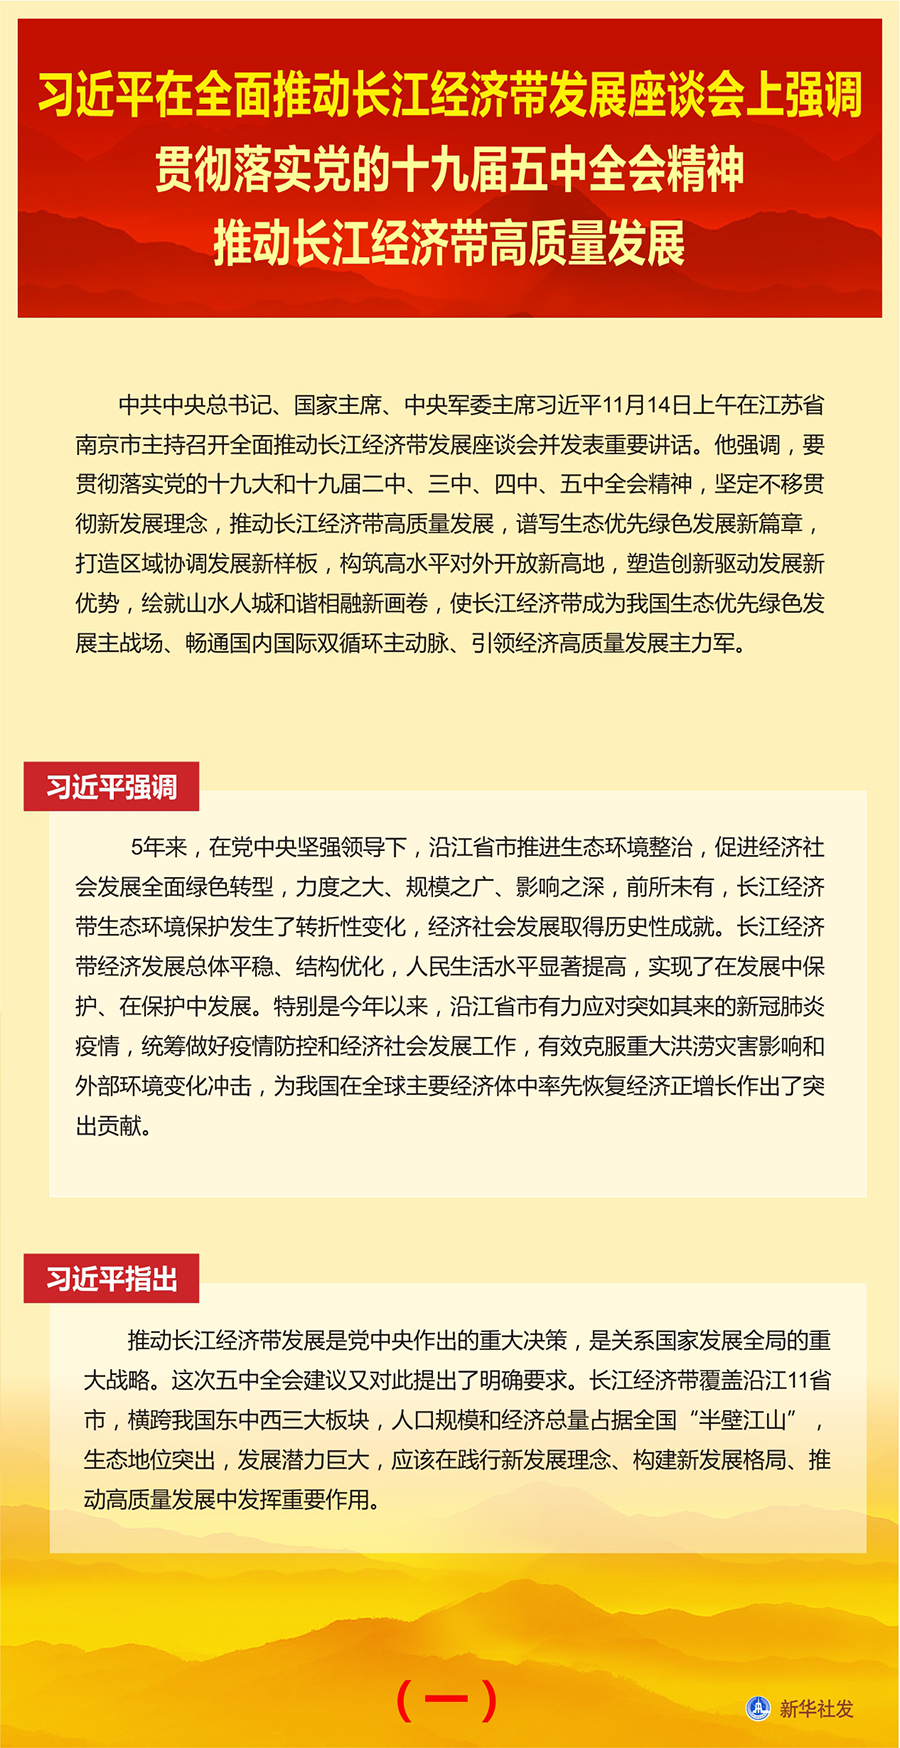 习近平在全面推动长江经济带发展座谈会上发表讲话(图3)